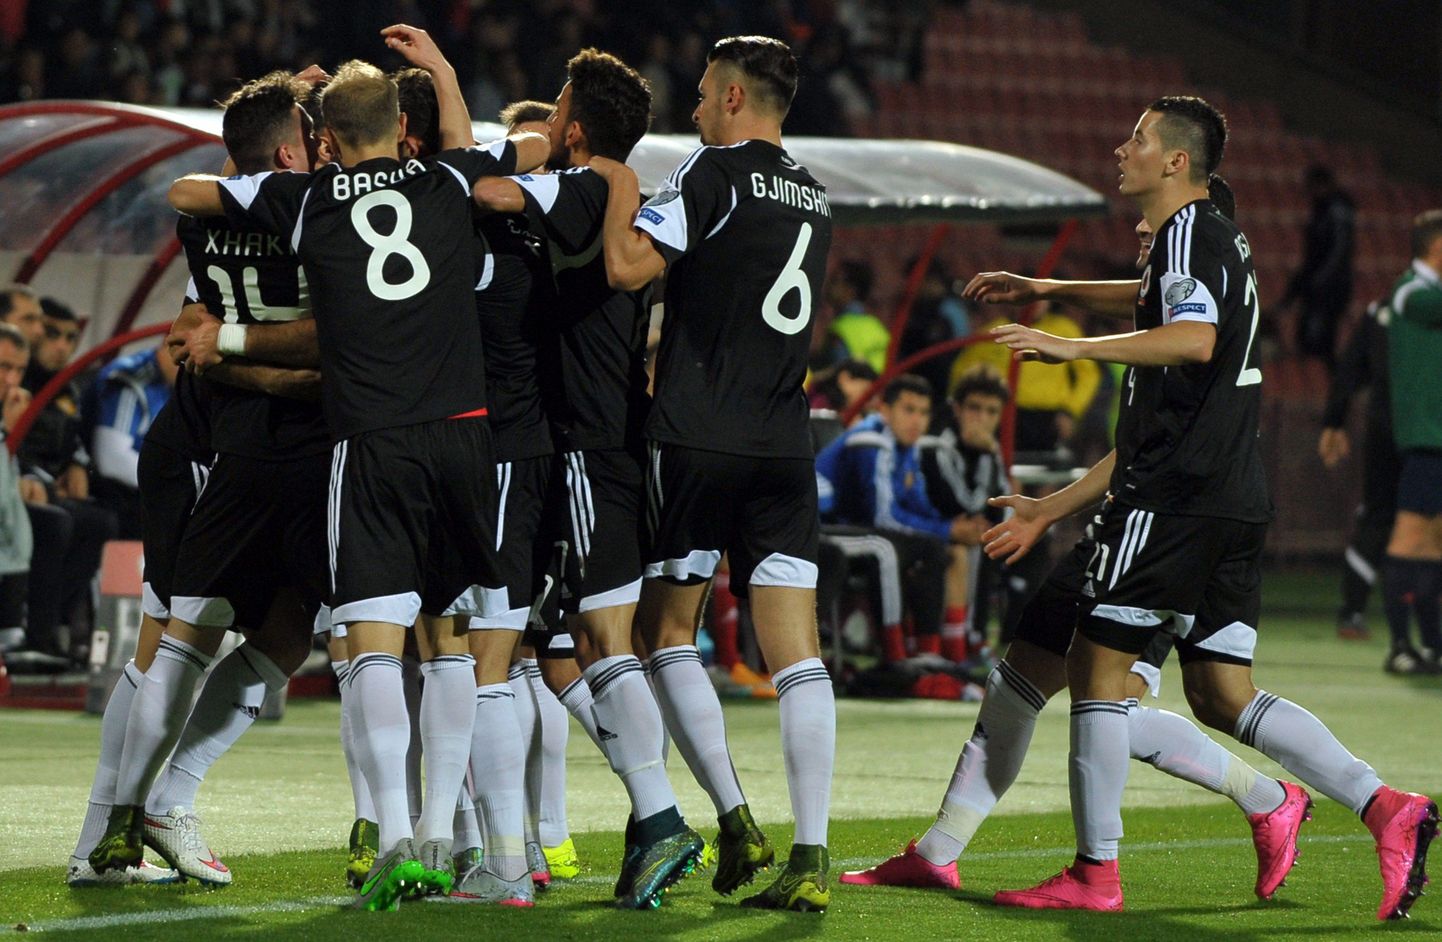 Albaania jalgpallikoondis tähistamas Armeenia vastu löödud väravat.